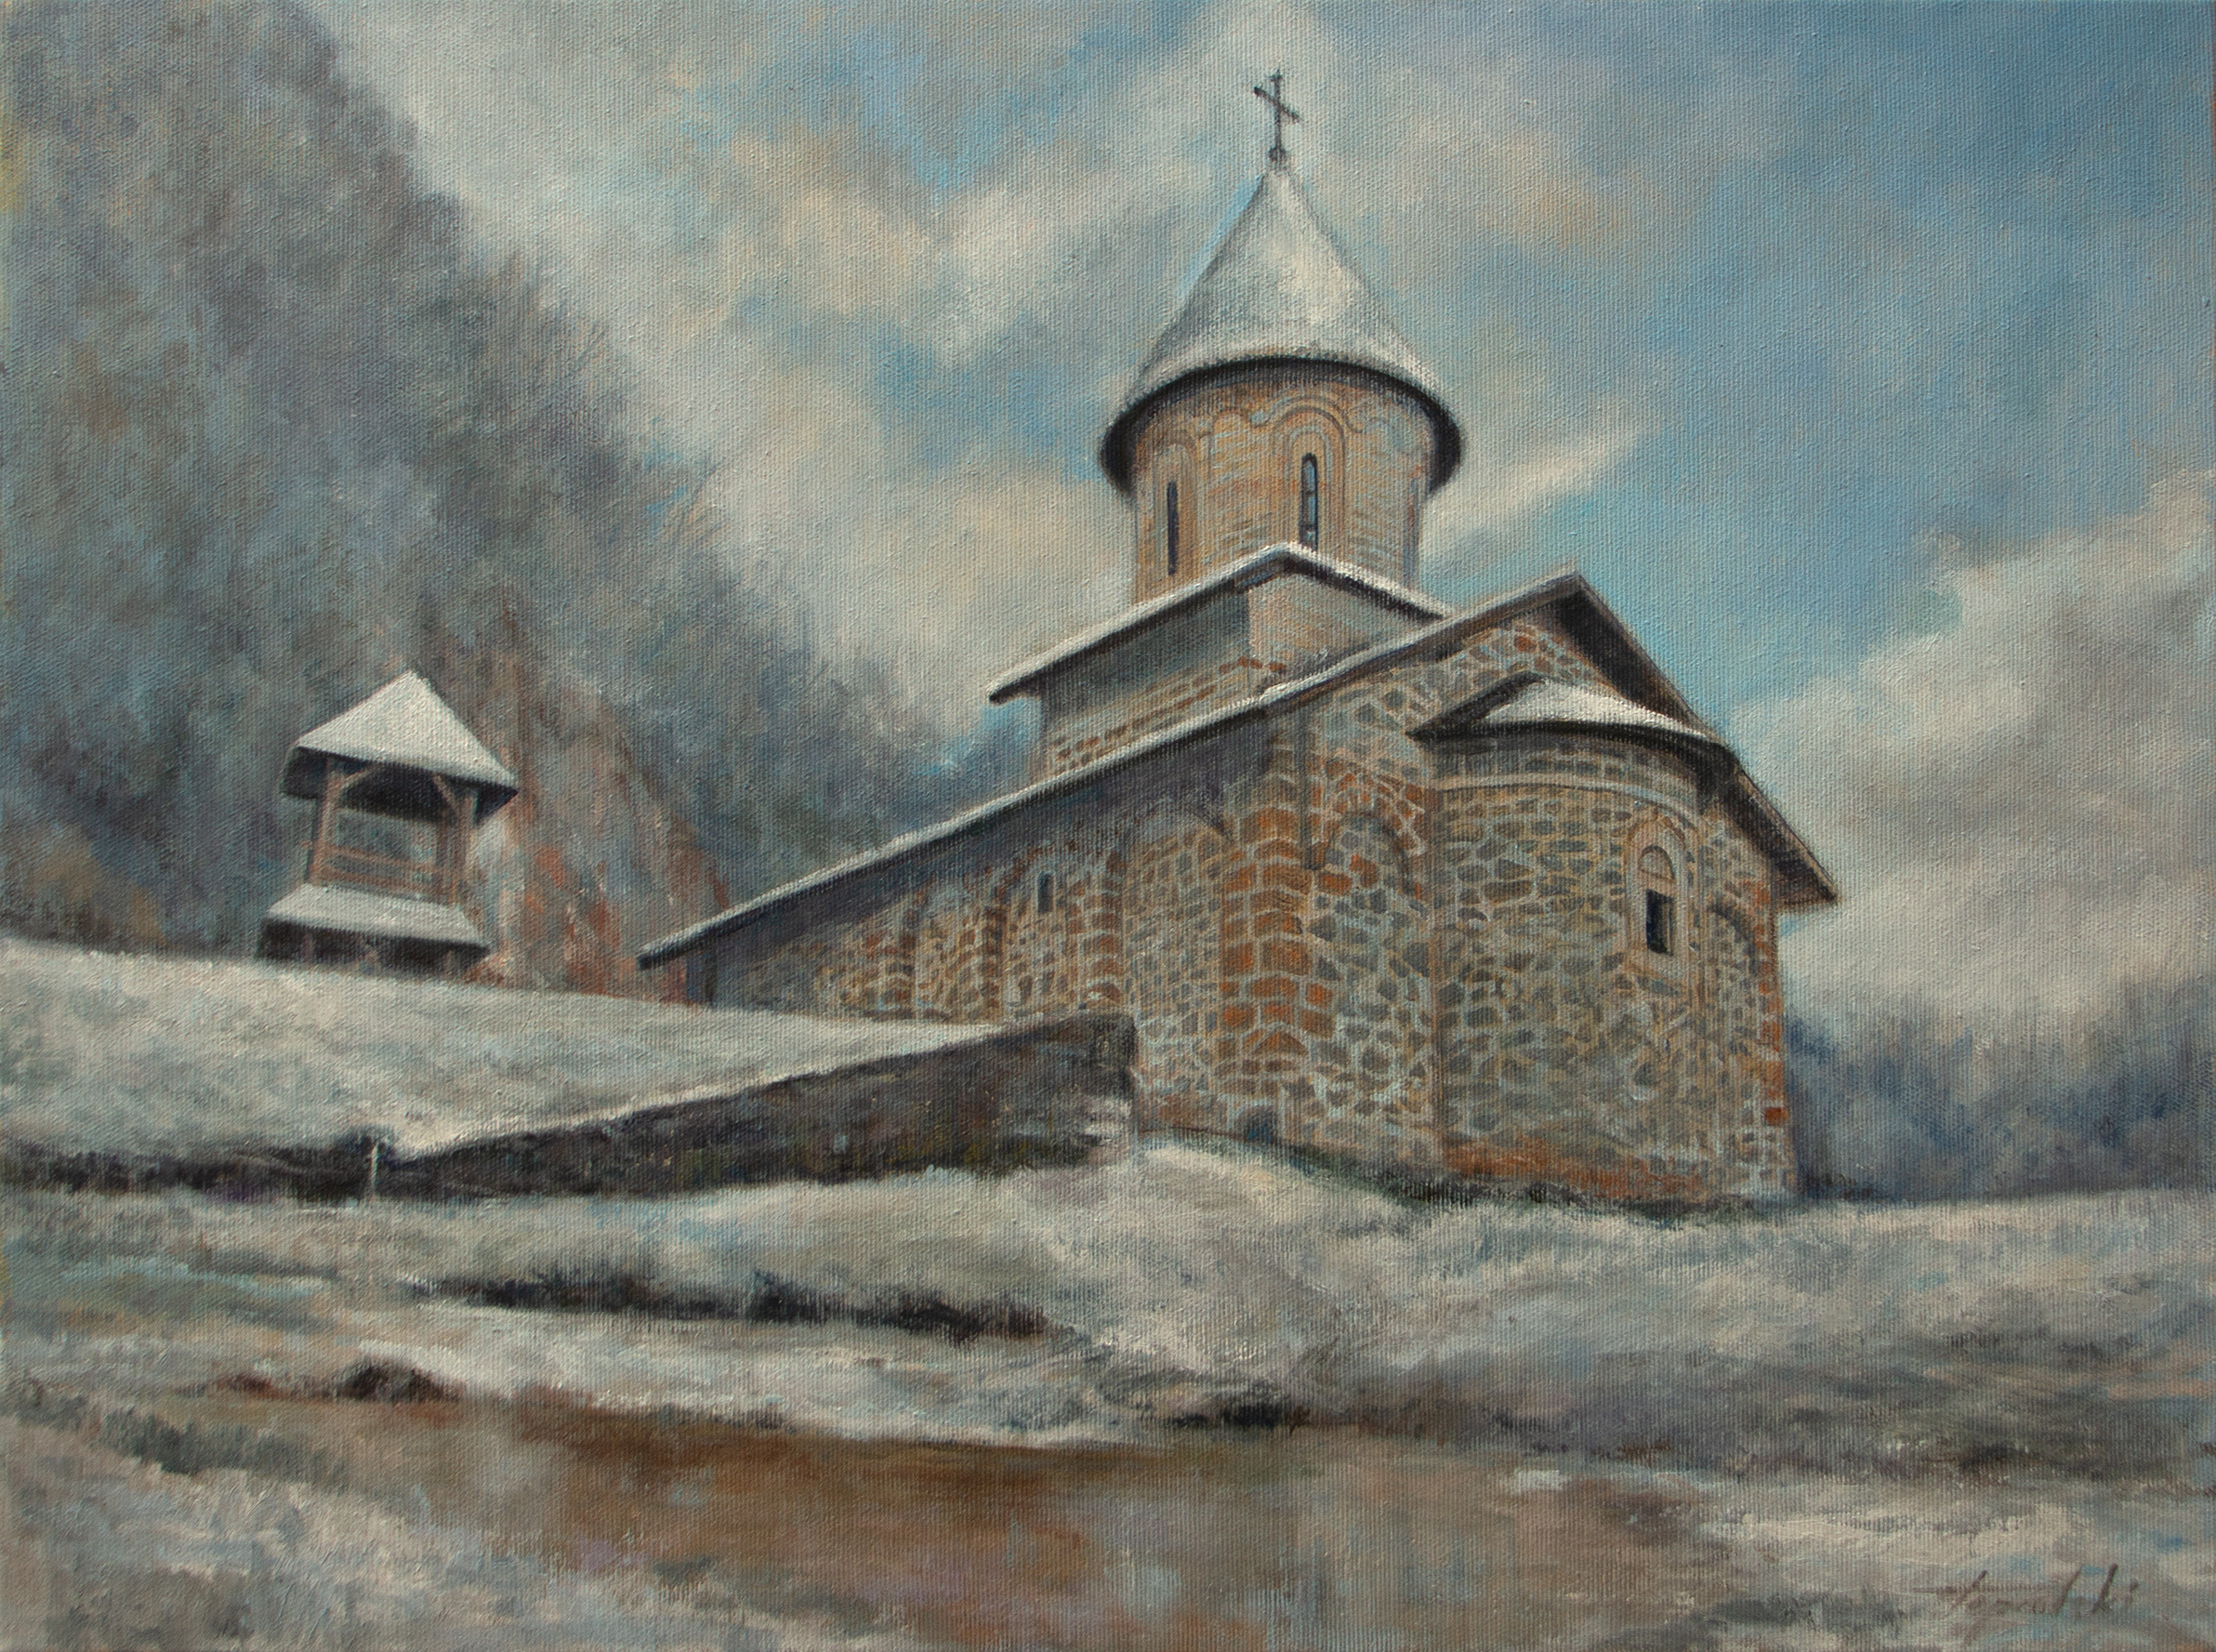 Umetnička slika - Manastir Godovik zimi - 45x60cm Ulje na platnu po narudžbini - umetnik Darko Topalski